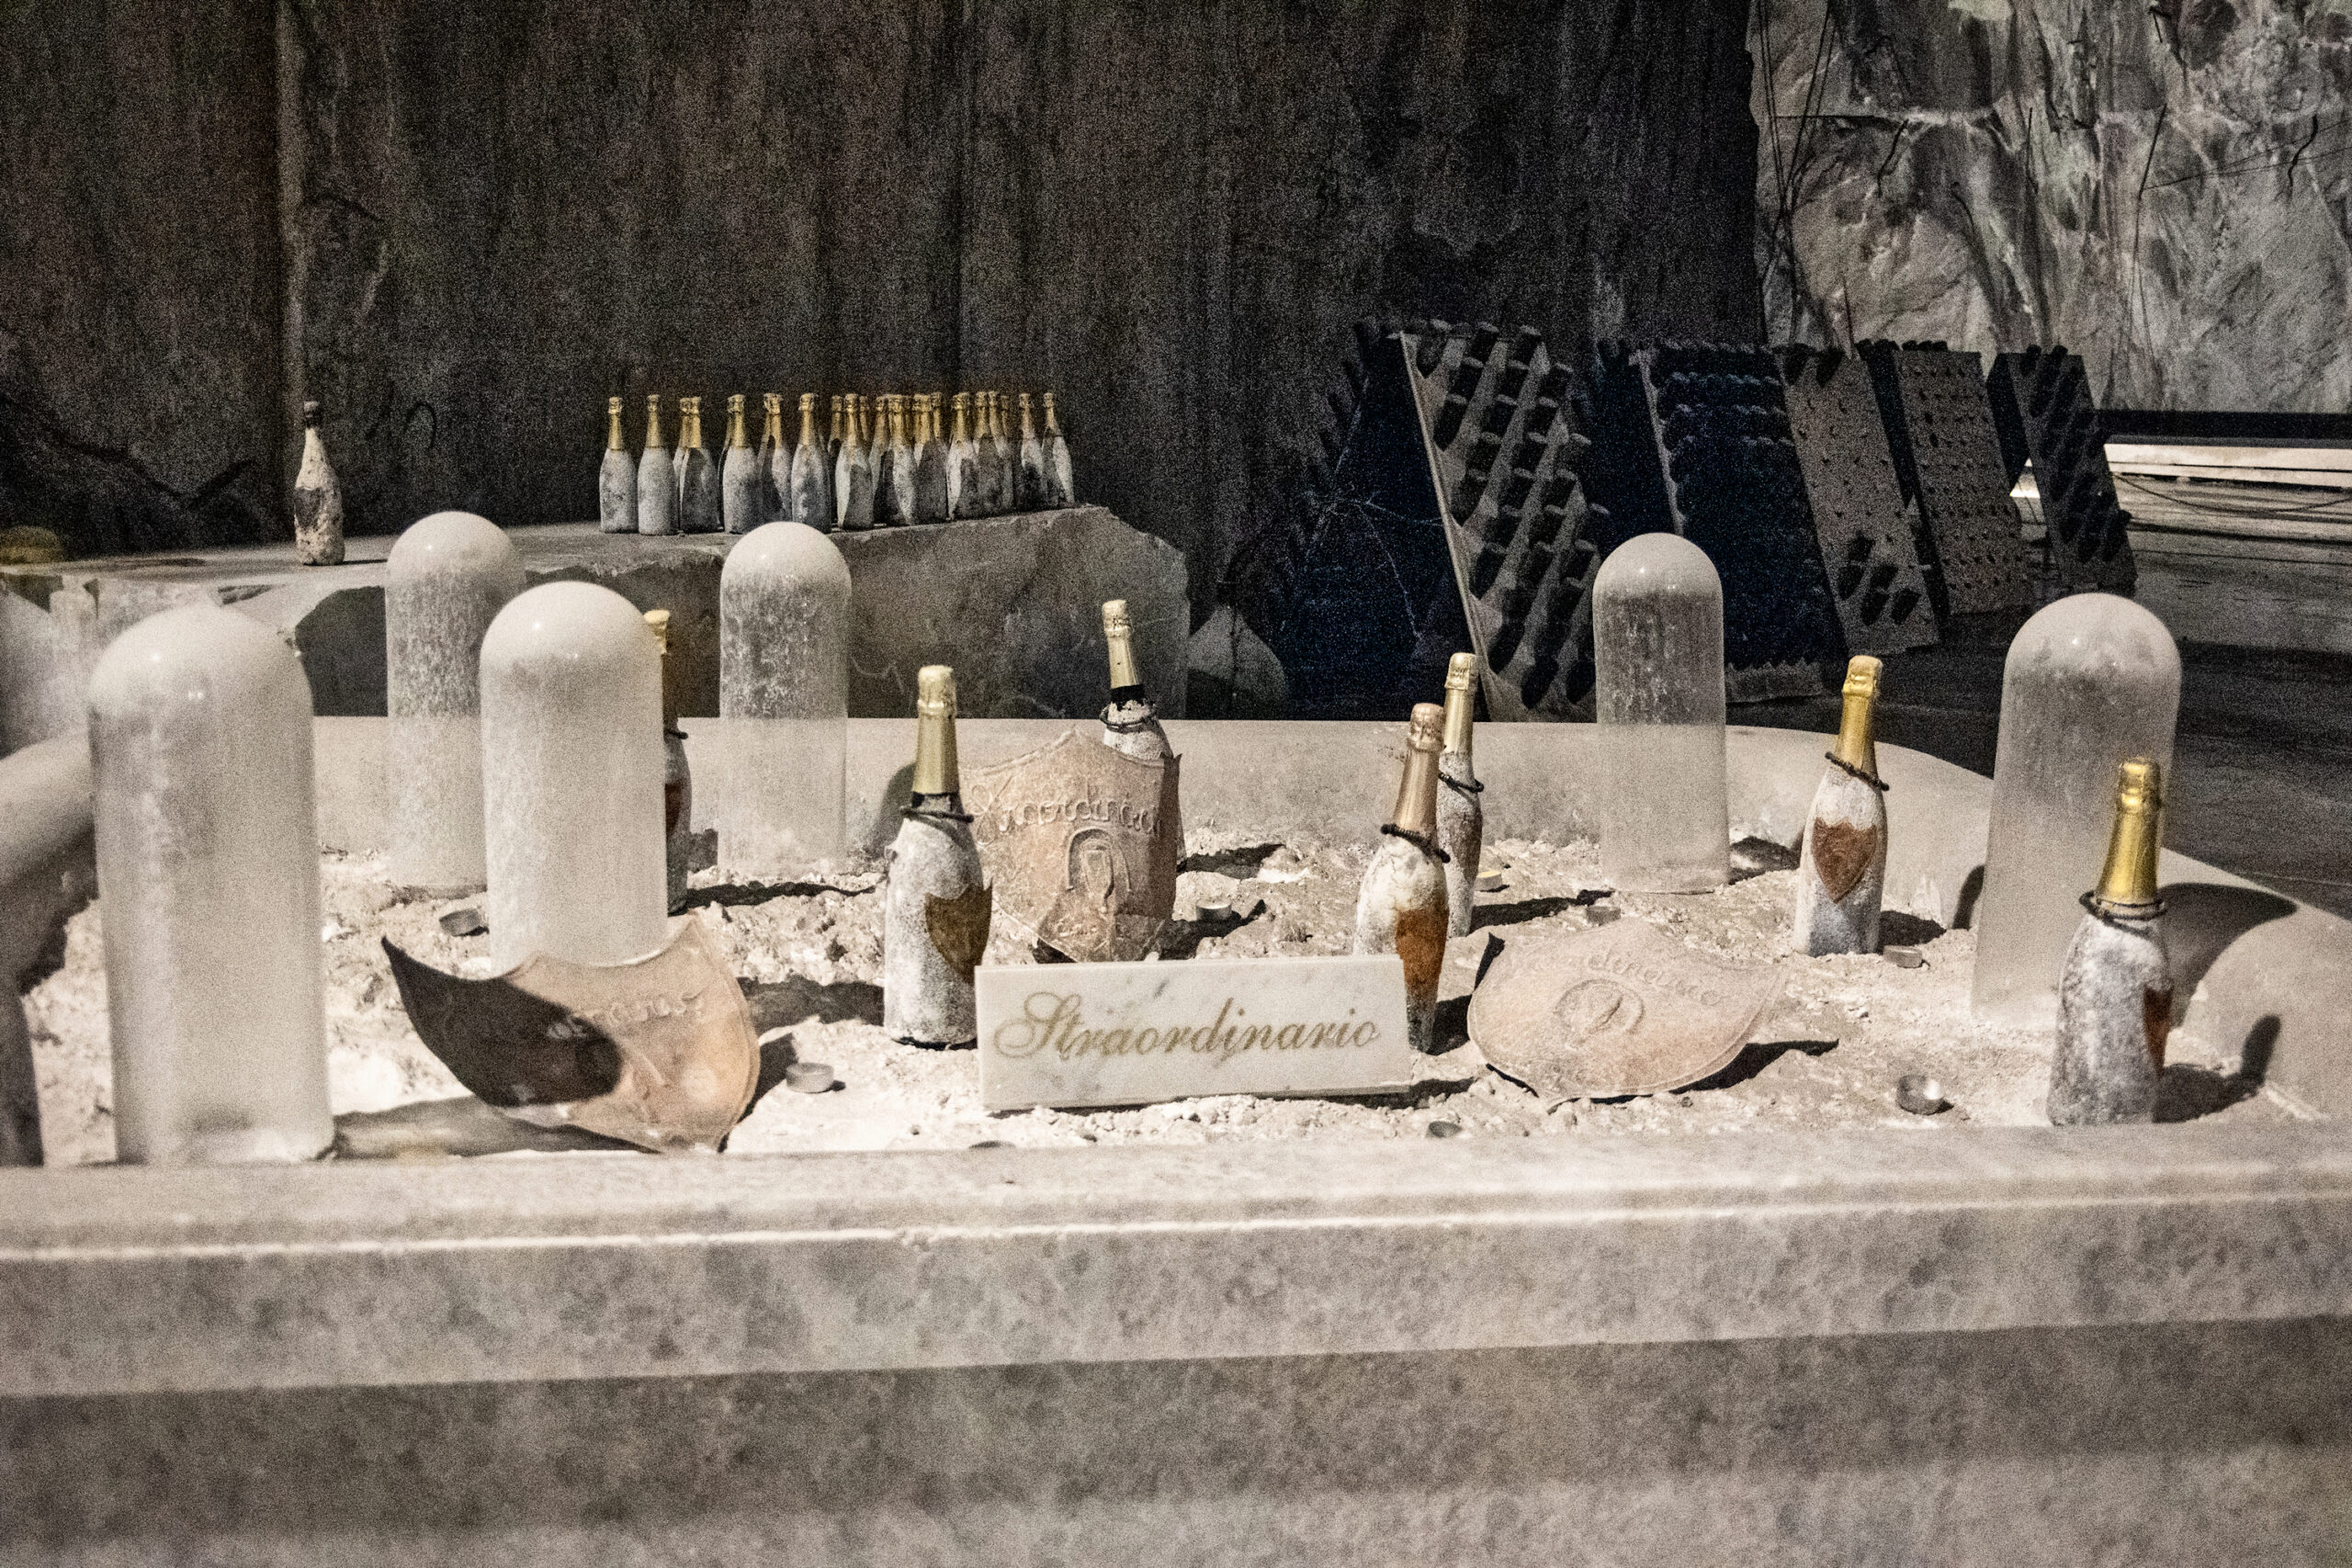 Bottiglie di spumante metodo classico Straordinario con marmettola nella cava di marmo di Carrara